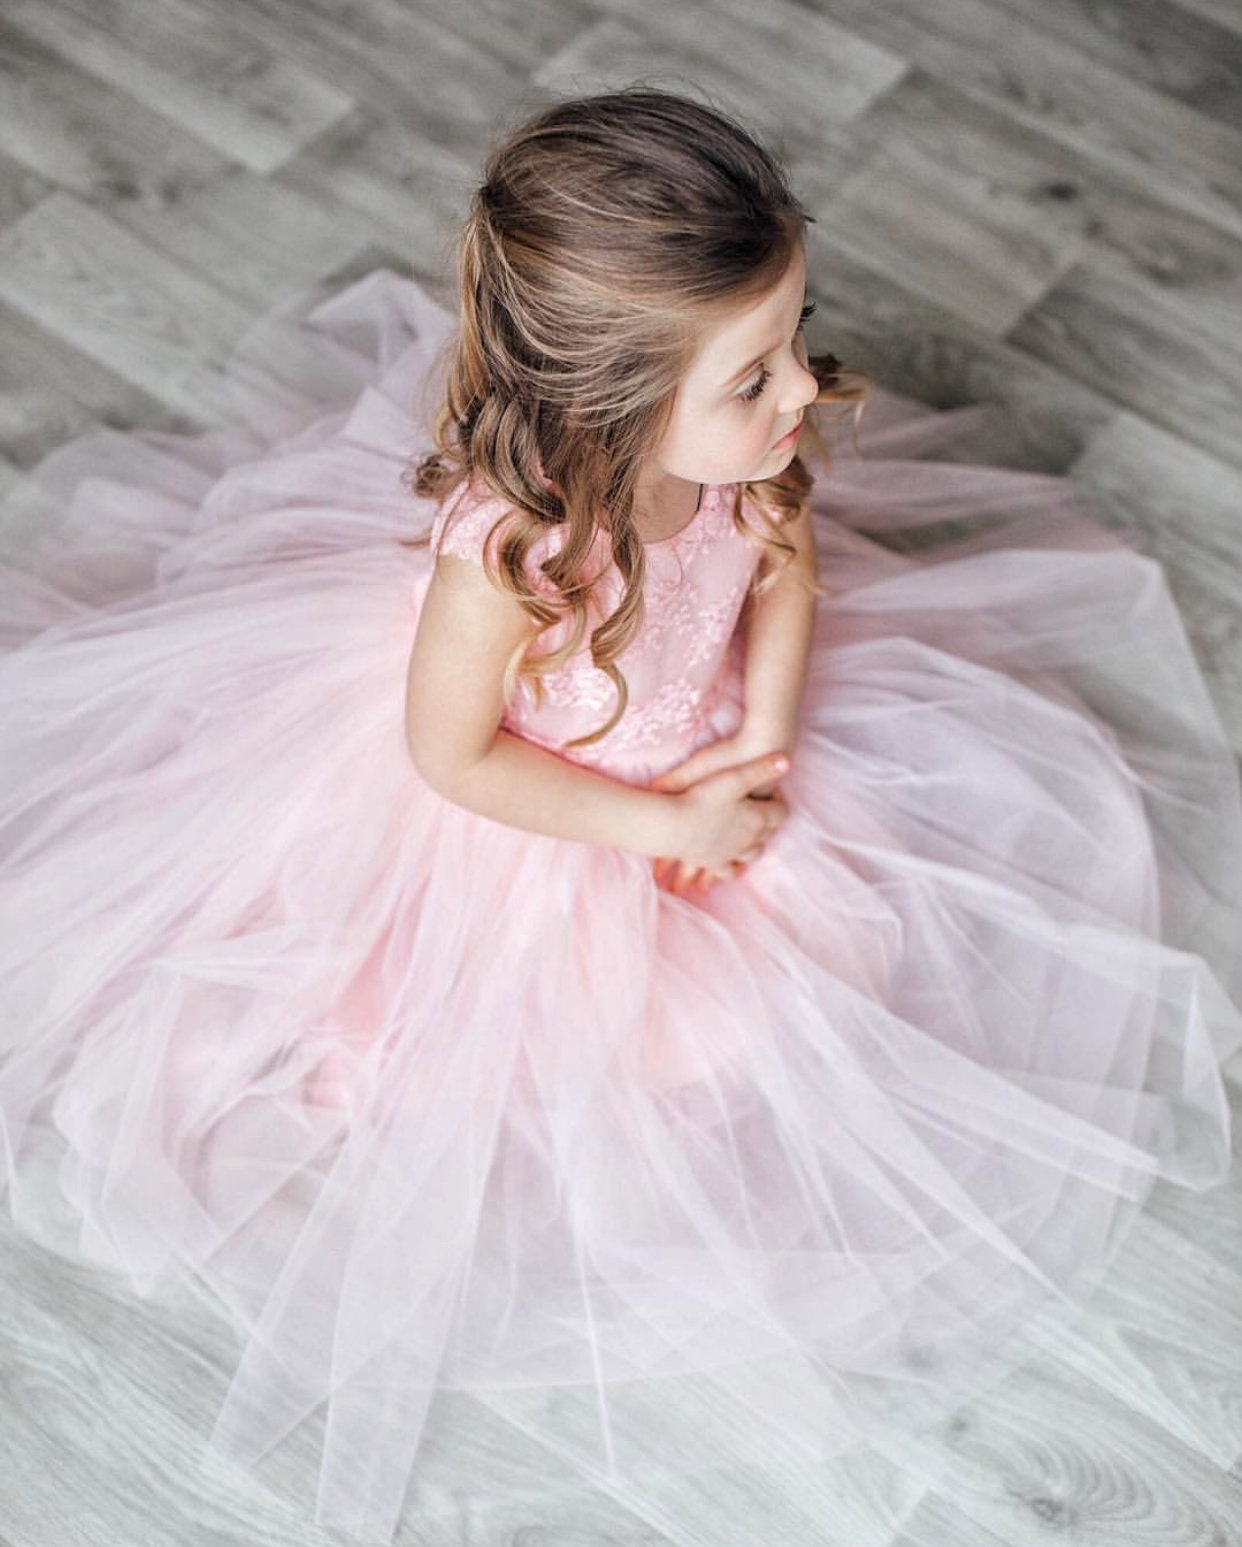 Blush Tulle Flower Girl Dress Baby Flower Girl Dress | Etsy